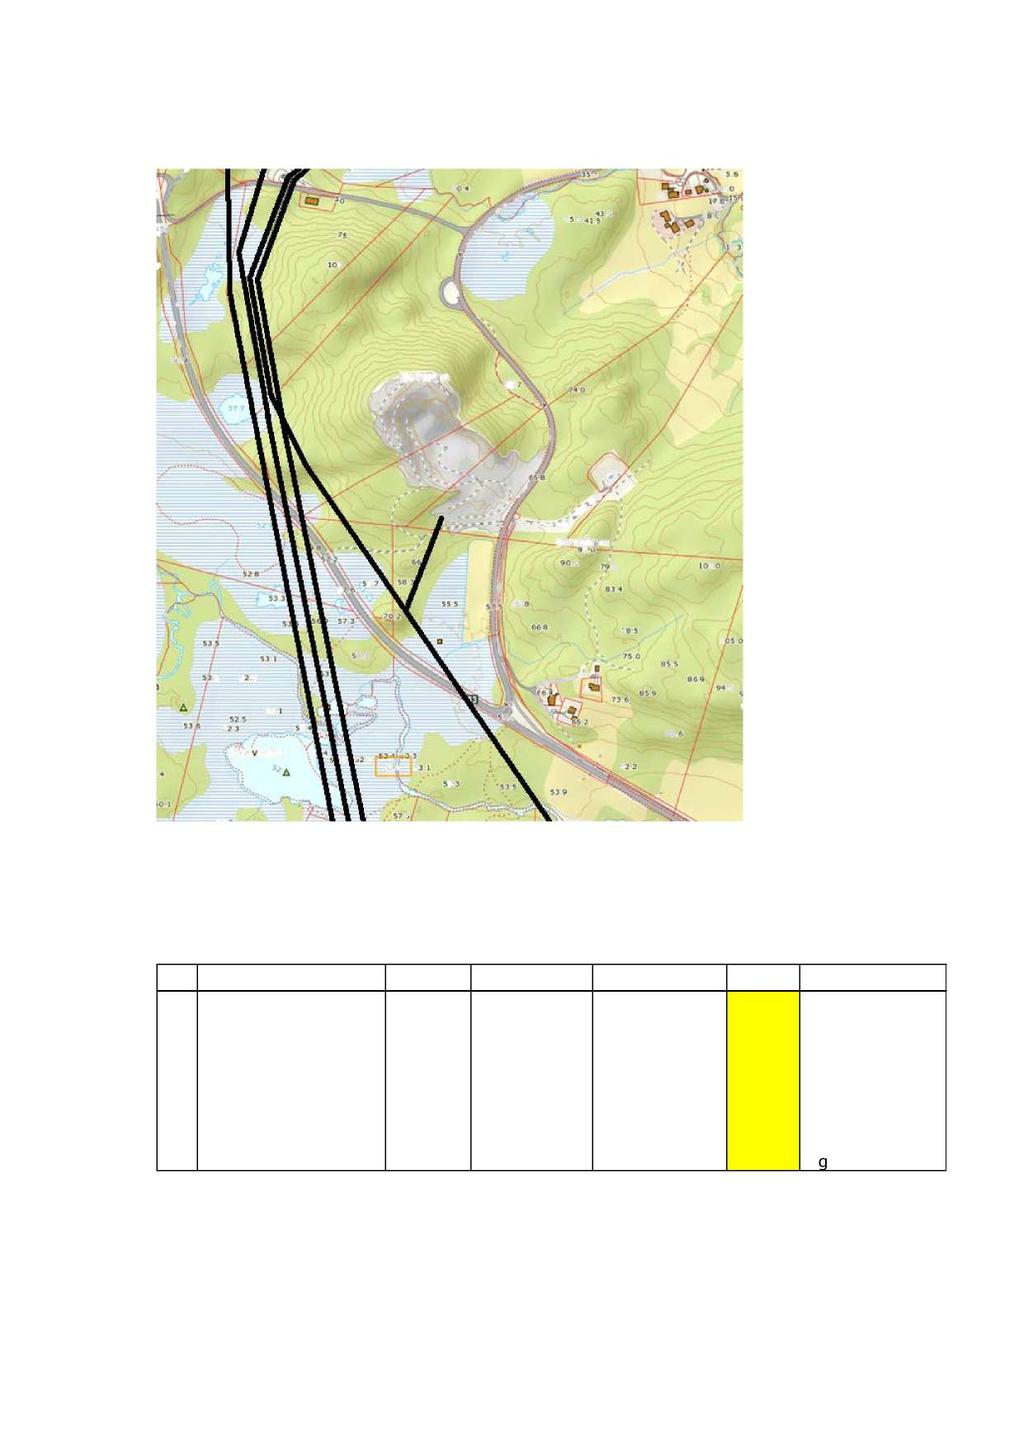 RISIKO- OG SÅRBARHETSANALYSE 17 (19) Kraftlinjer/-kabler i området er markert som svarte, rette linjer. 1.3.